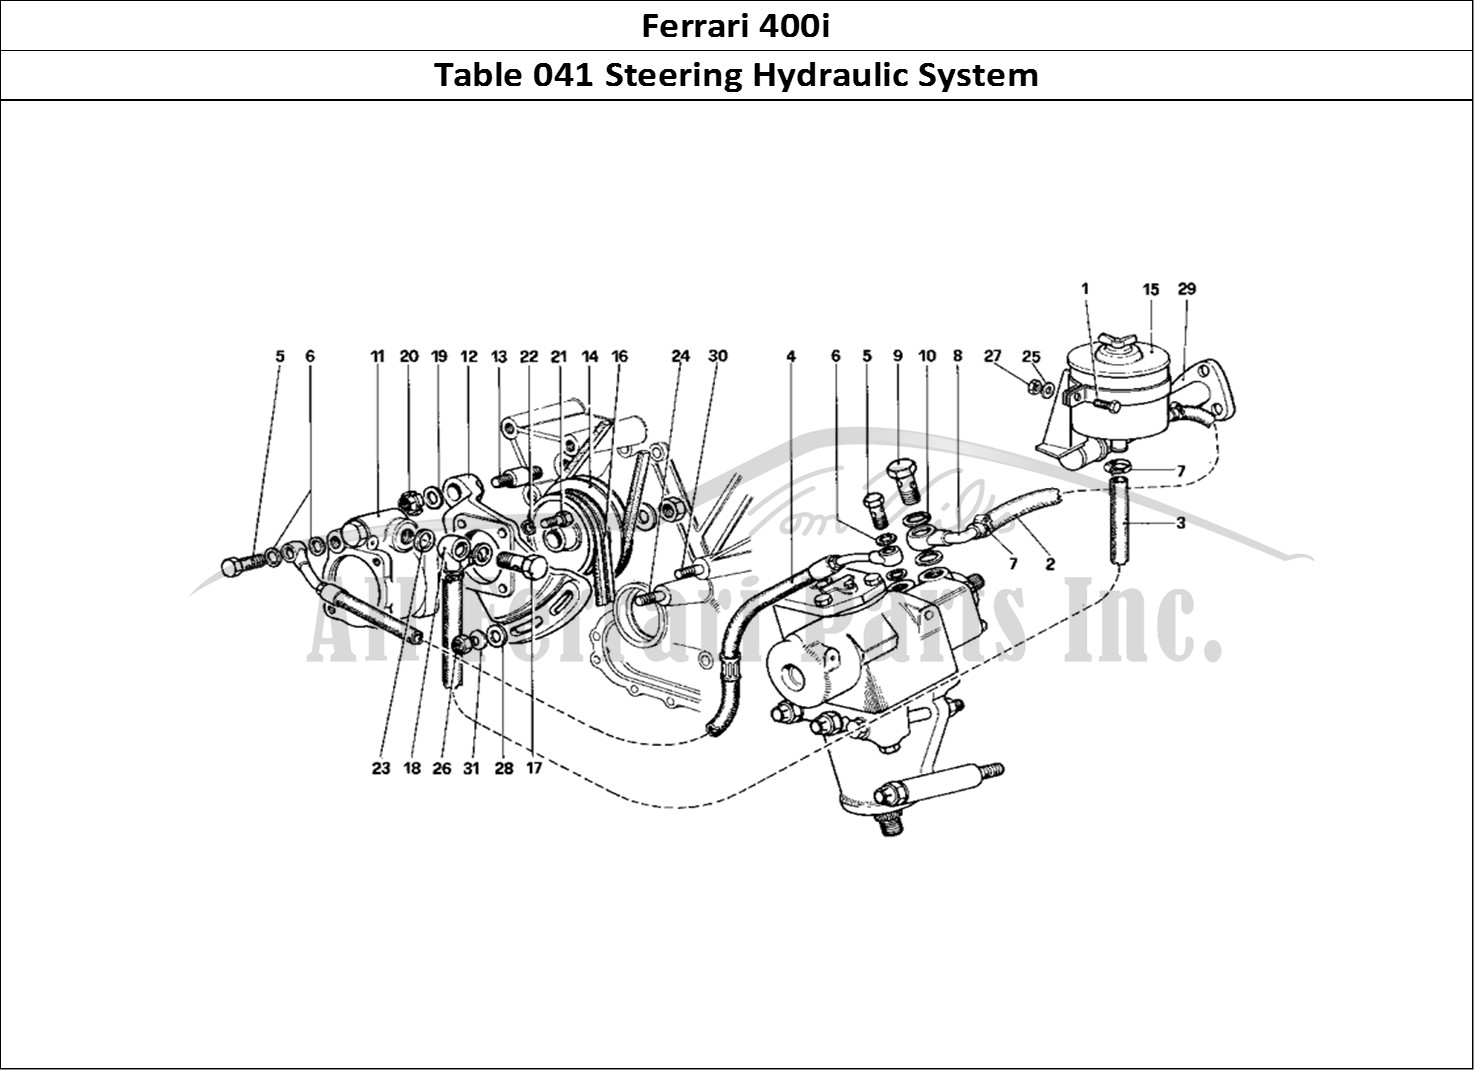 Ferrari Parts Ferrari 400i (1983 Mechanical) Page 041 Hydraulic Steering System